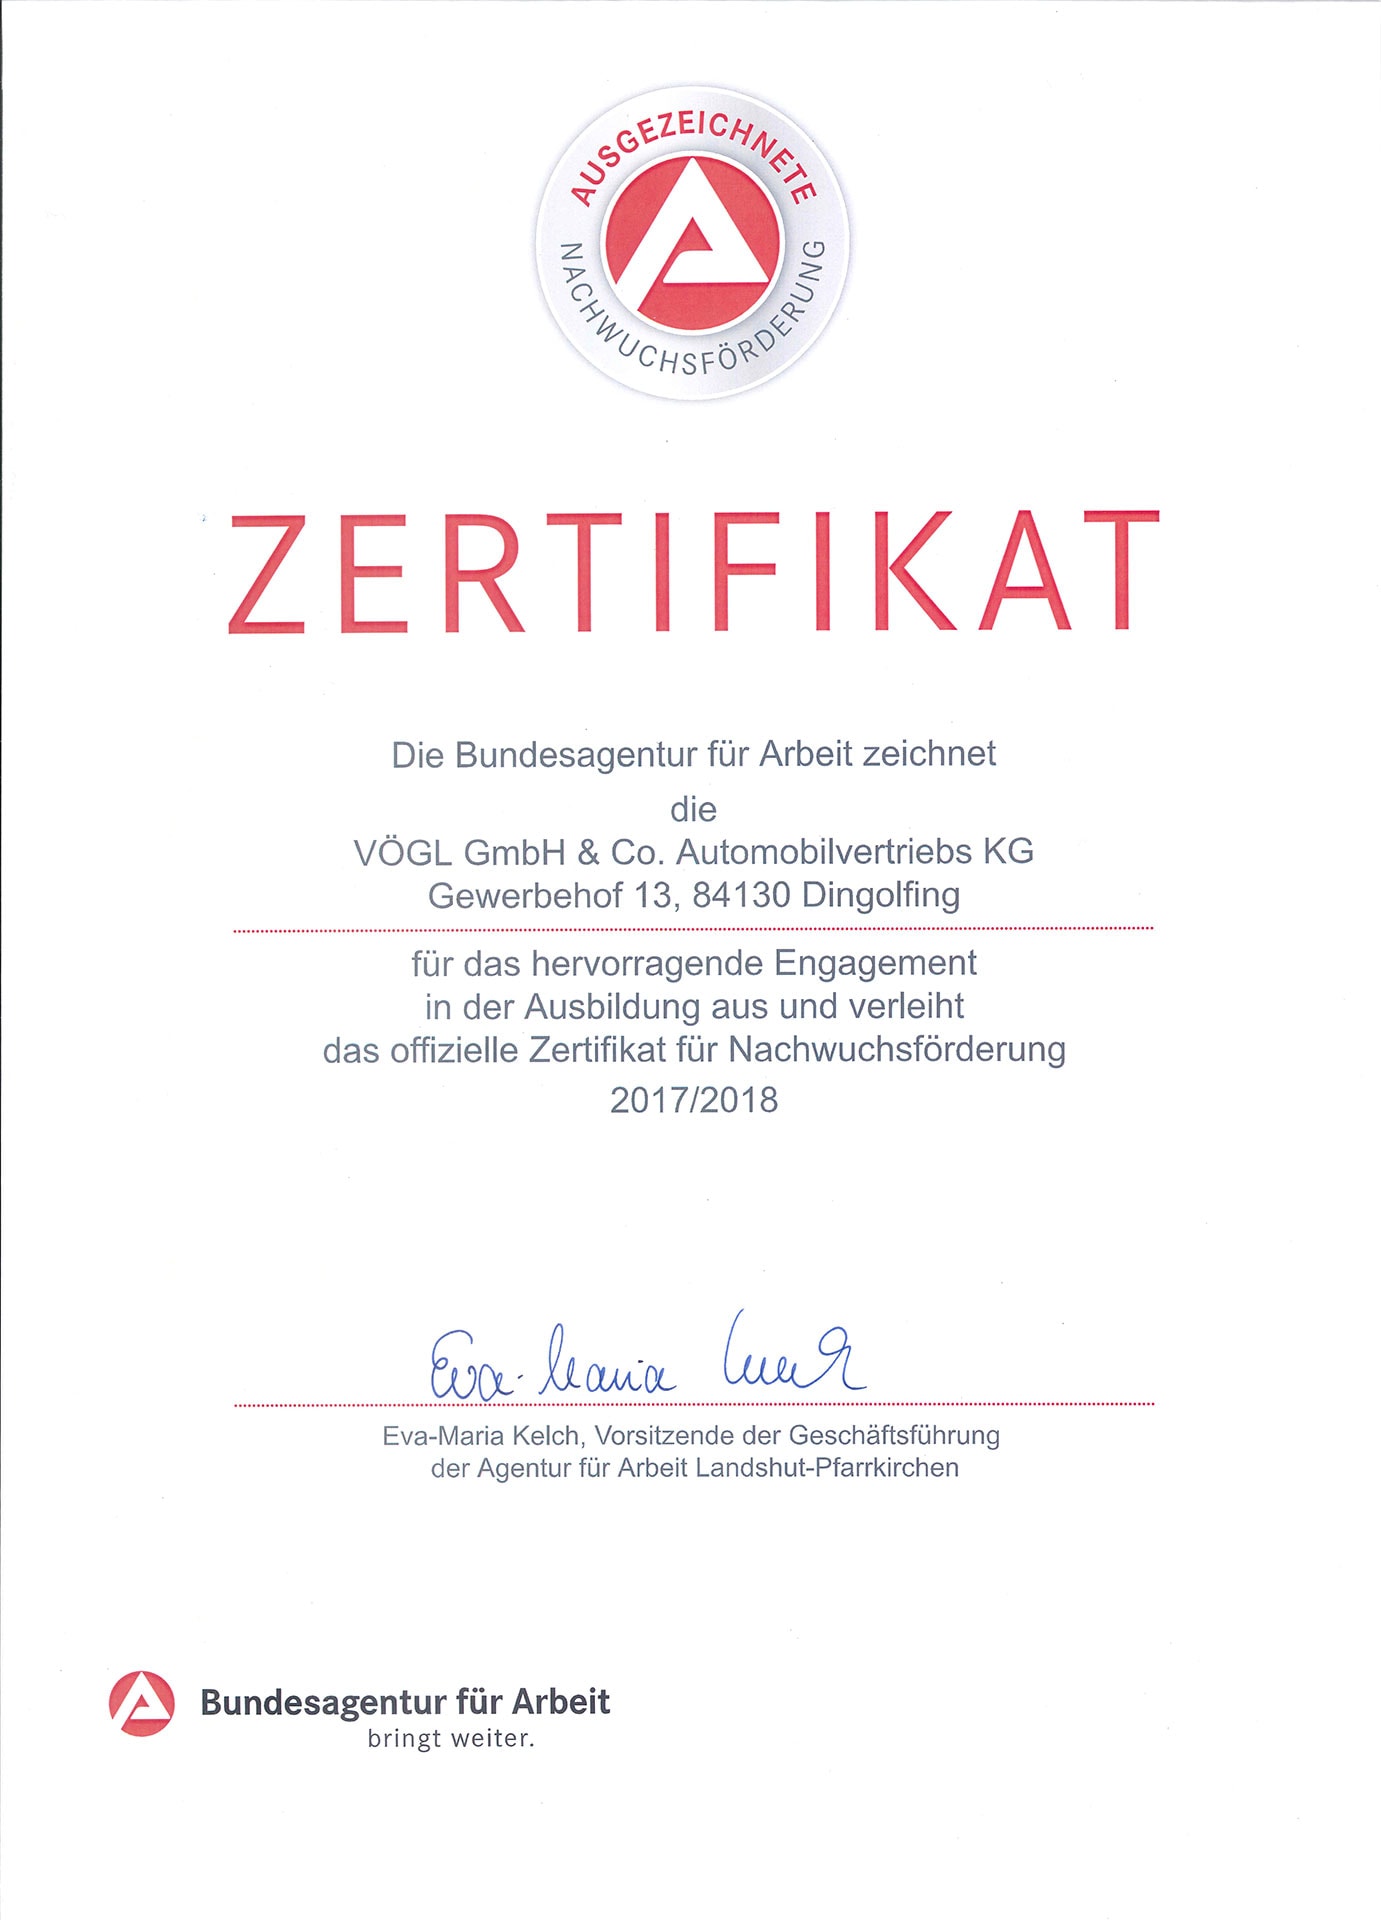 Zertifikat von der Bundesagentur für Arbeit für Vögl GmbH & Co. Automobilvertriebs KG